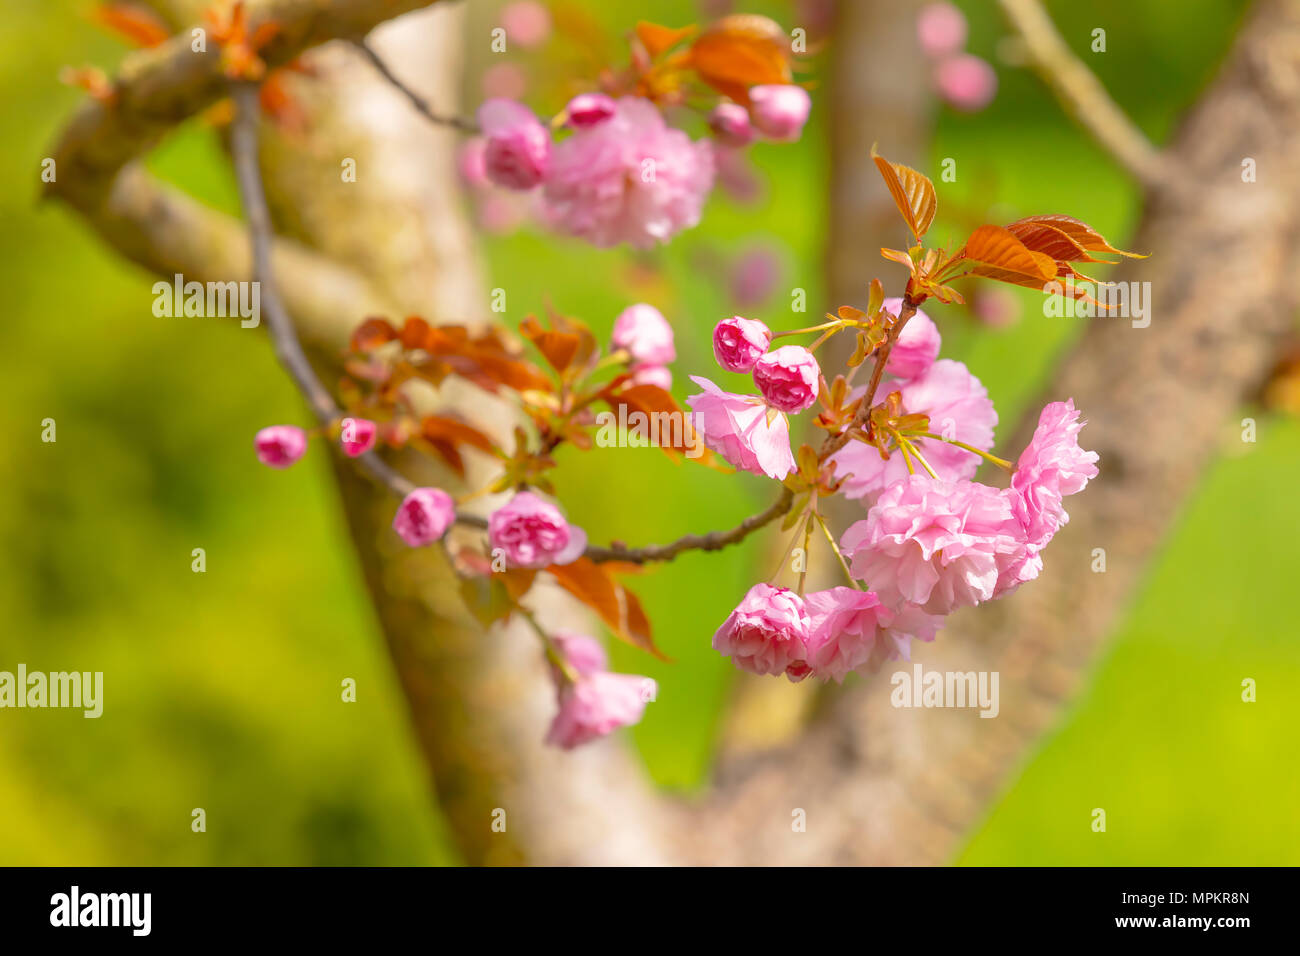 Blüte der Baum als Zeichen des Frühlings. Selektive konzentrieren. Soft Focus Frühling Hintergrund. Stockfoto